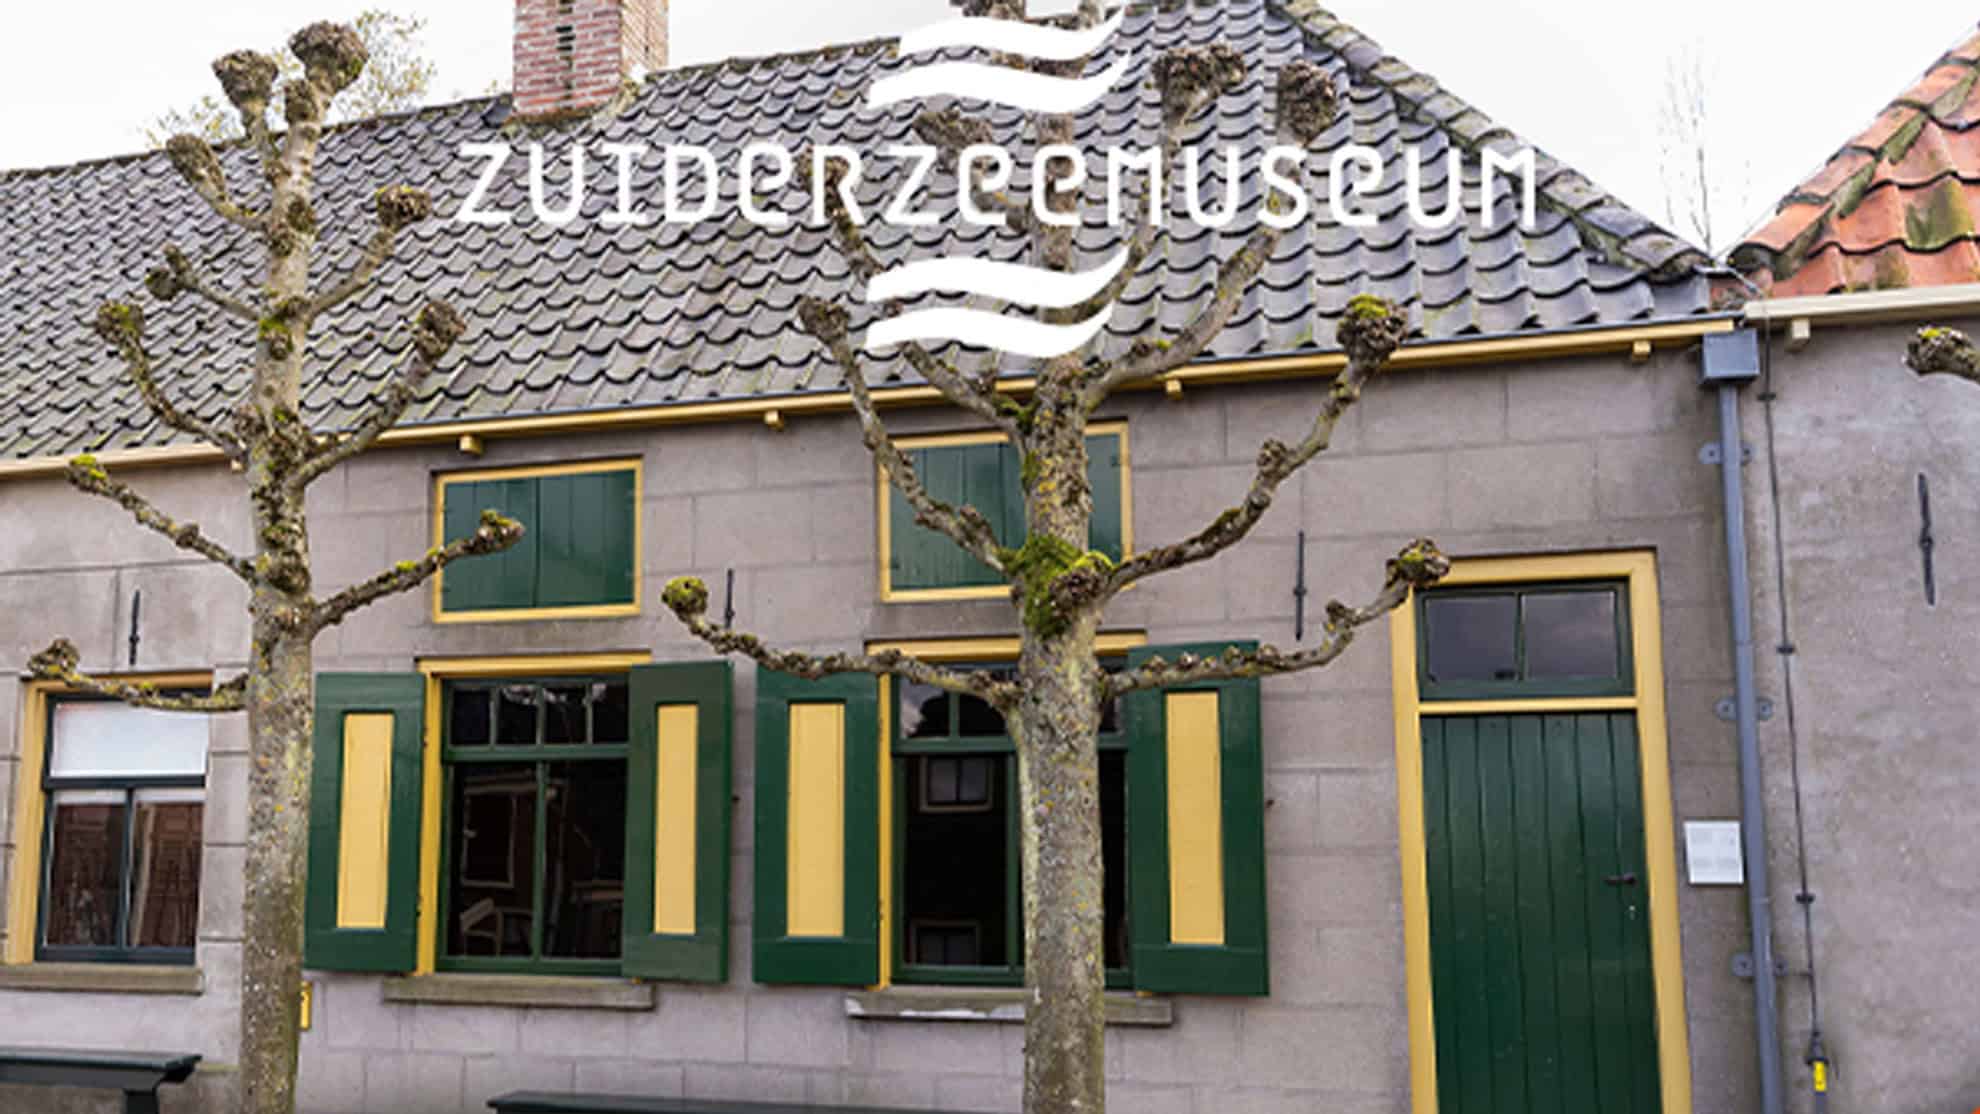 zuiderzee-museum